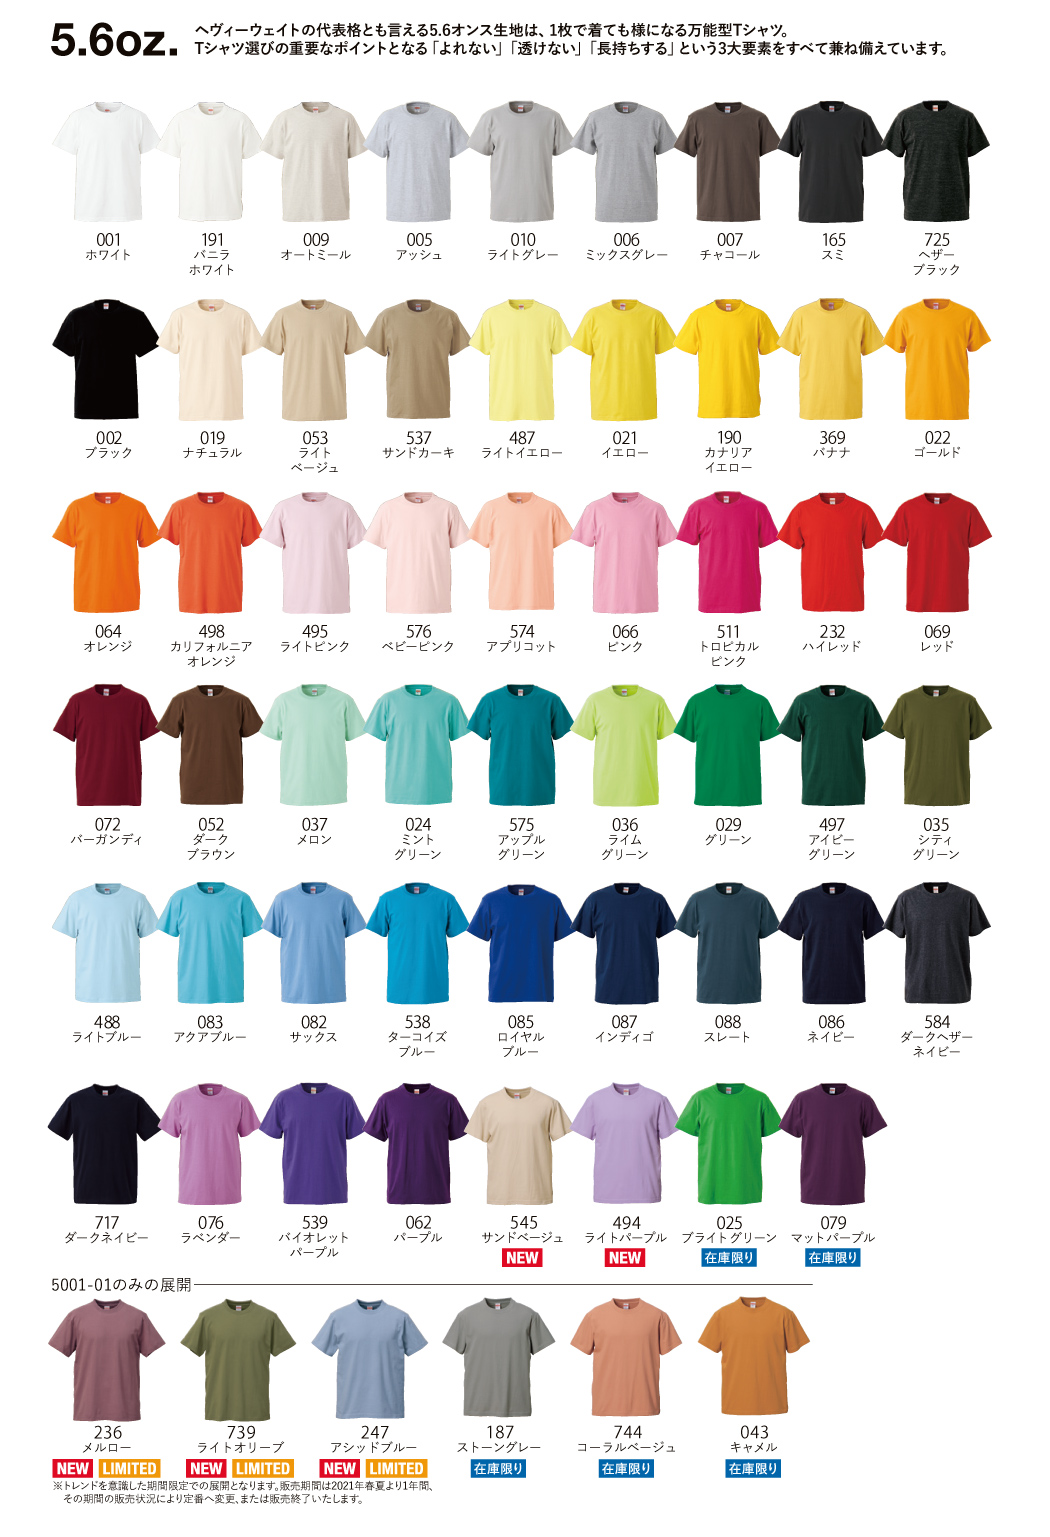 5001-01ハイクオリティーTシャツの商品カラー一覧